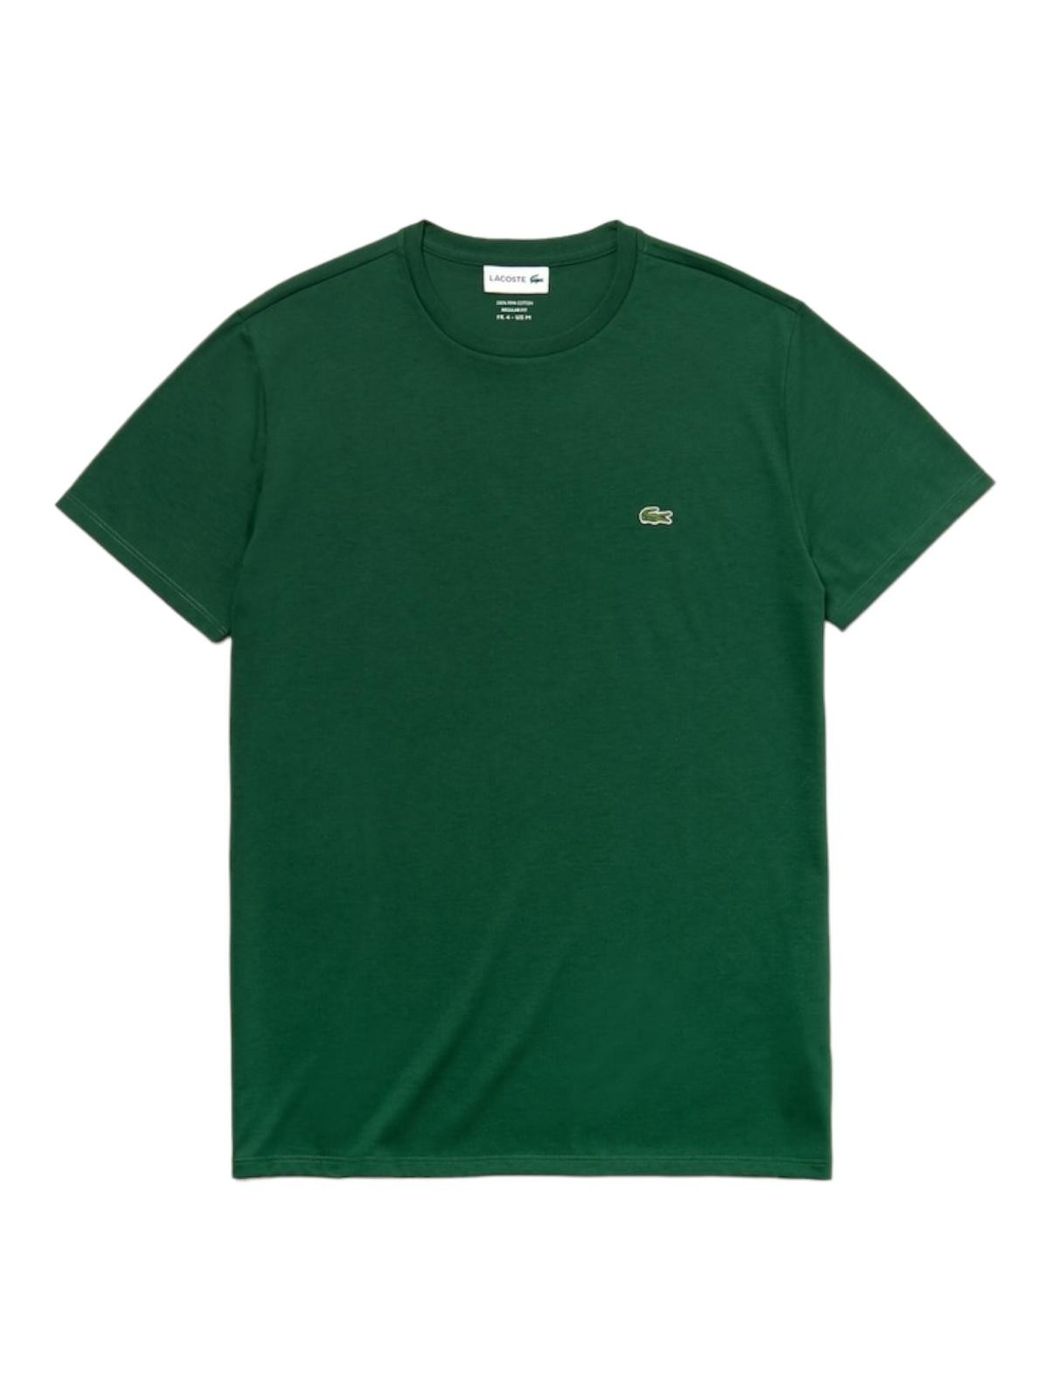 LACOSTE T-Shirt et Polo Hommes TH6709 132 Vert